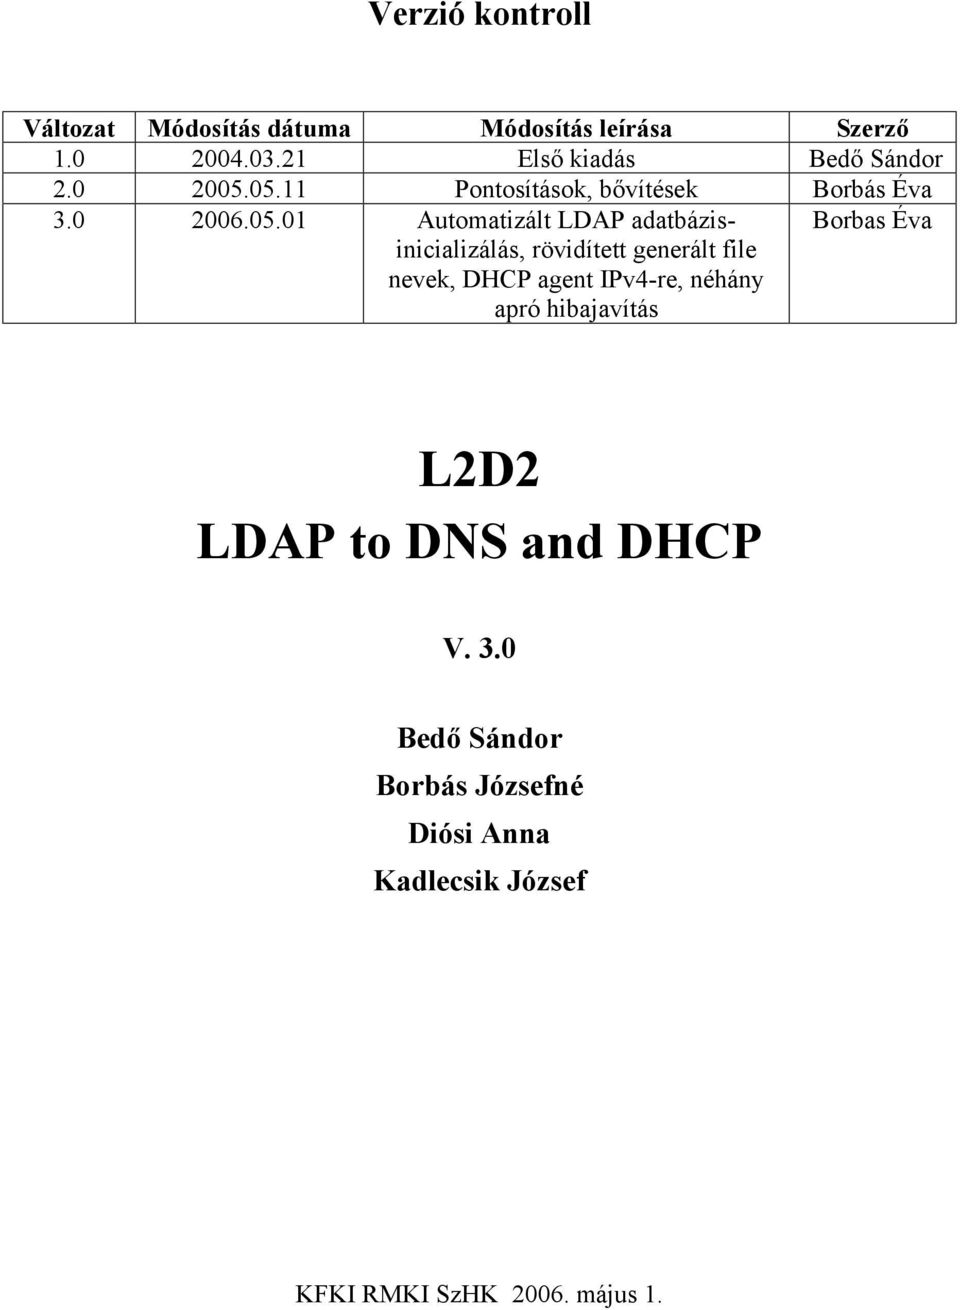 05.11 Pontosítások, bővítések Borbás Éva 3.0 2006.05.01 Automatizált LDAP adatbázisinicializálás,